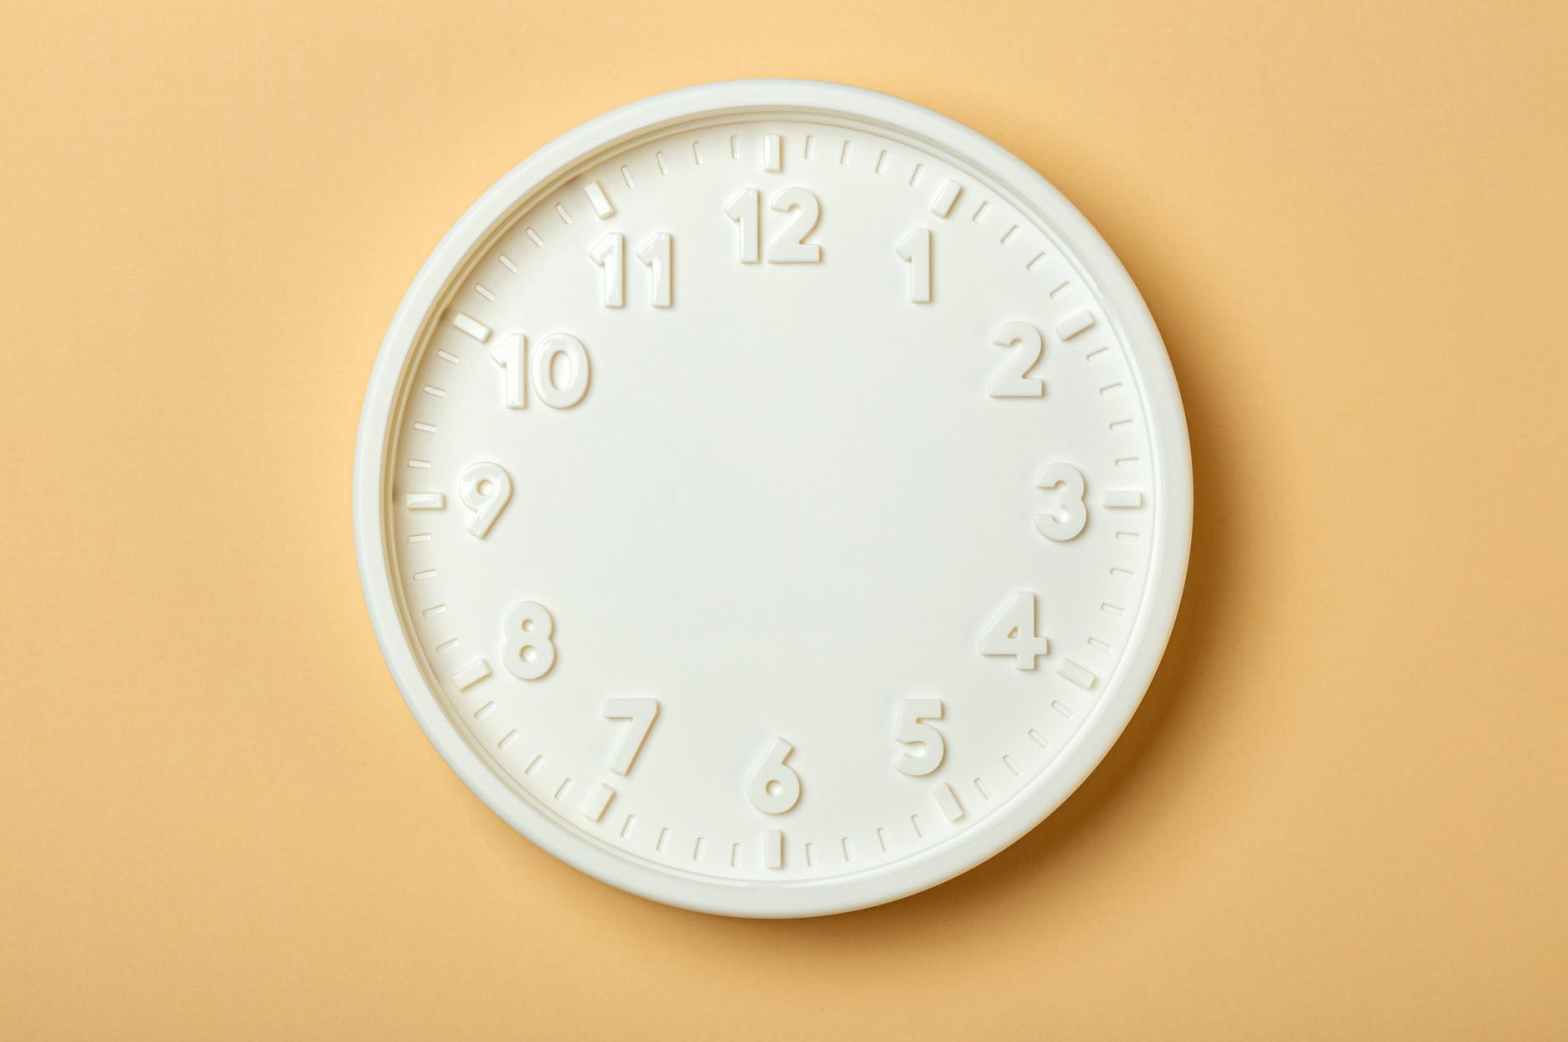 white round analog wall clock